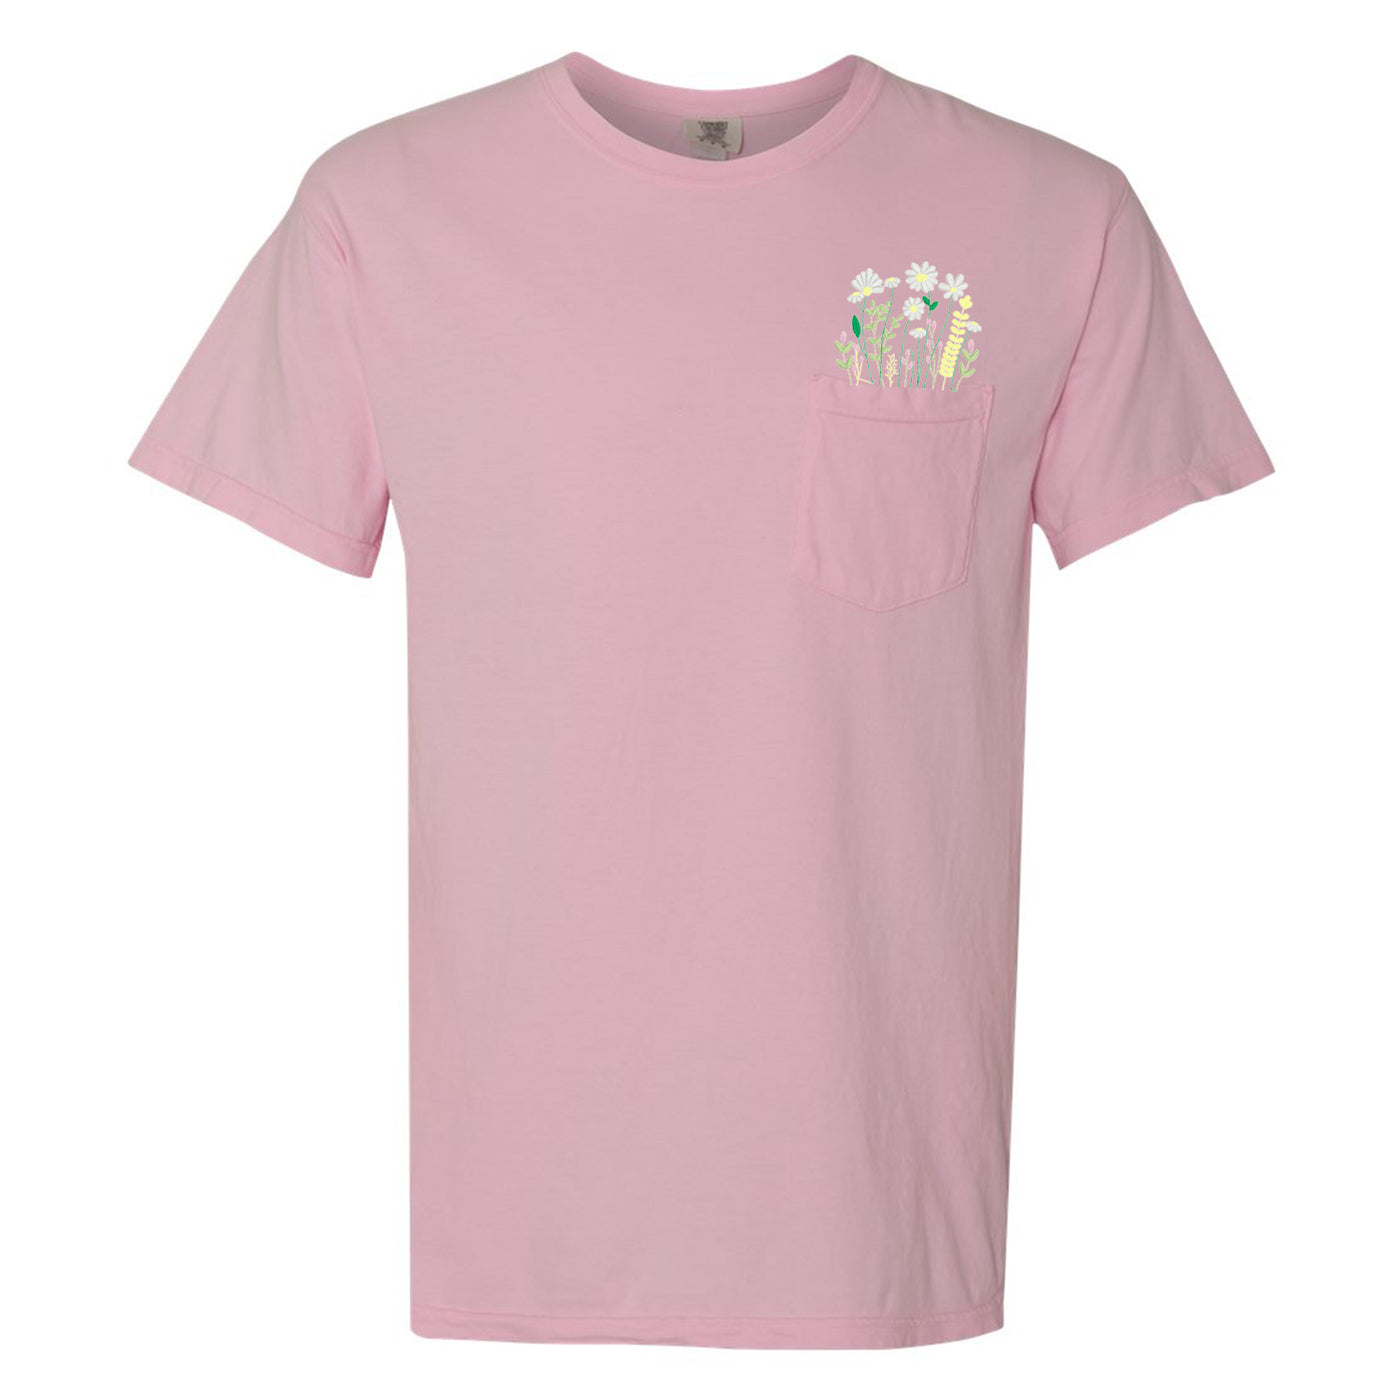 Embroidered 'Floral Pocket' Pocket T-Shirt